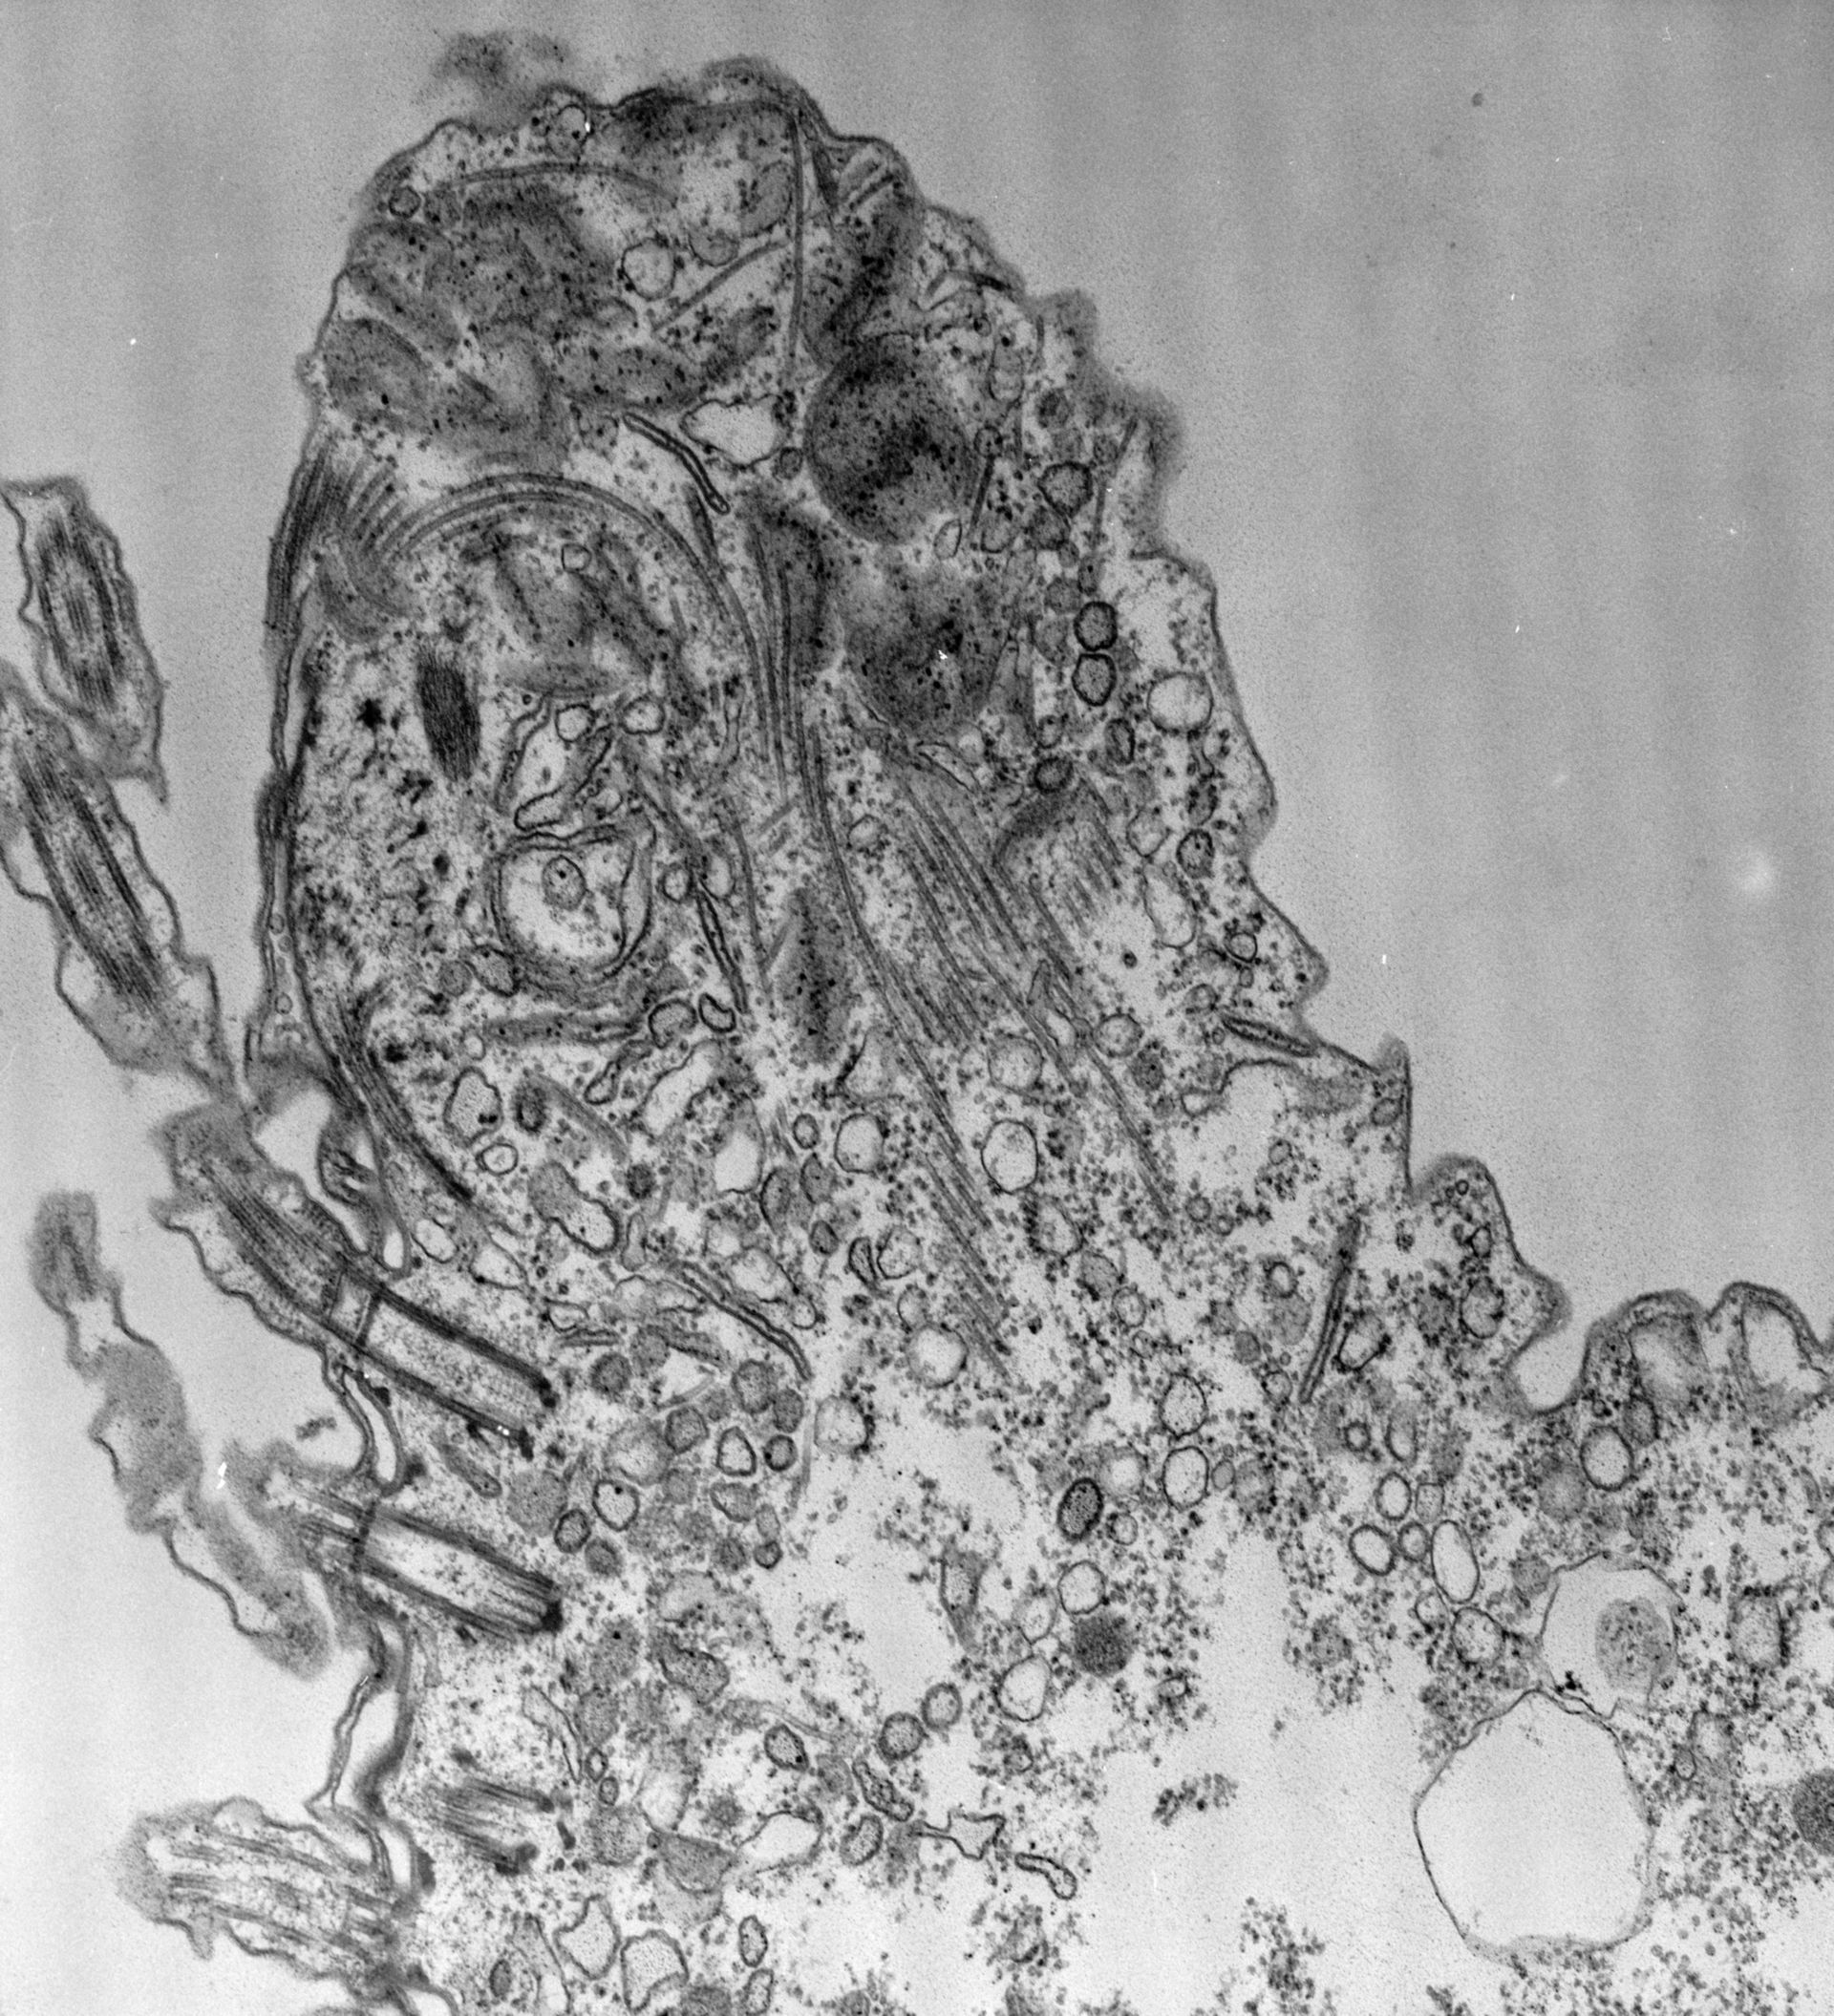 Paramecium caudatum (Pre-autophagosomal structure) - CIL:39165